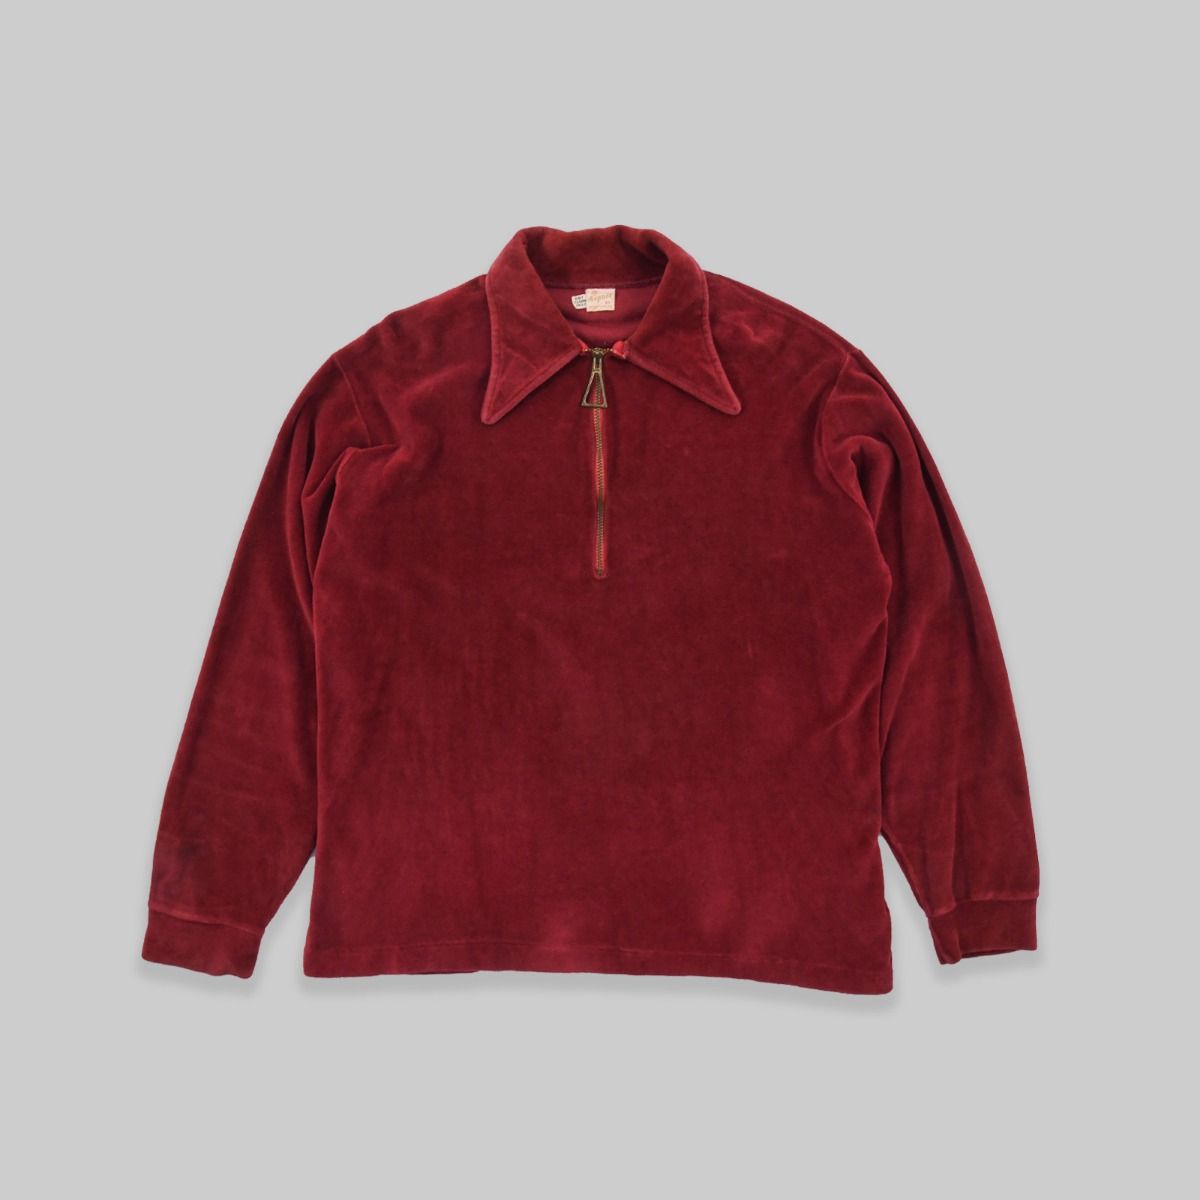 Gepner 1960s Velour Collared Sweatshirt